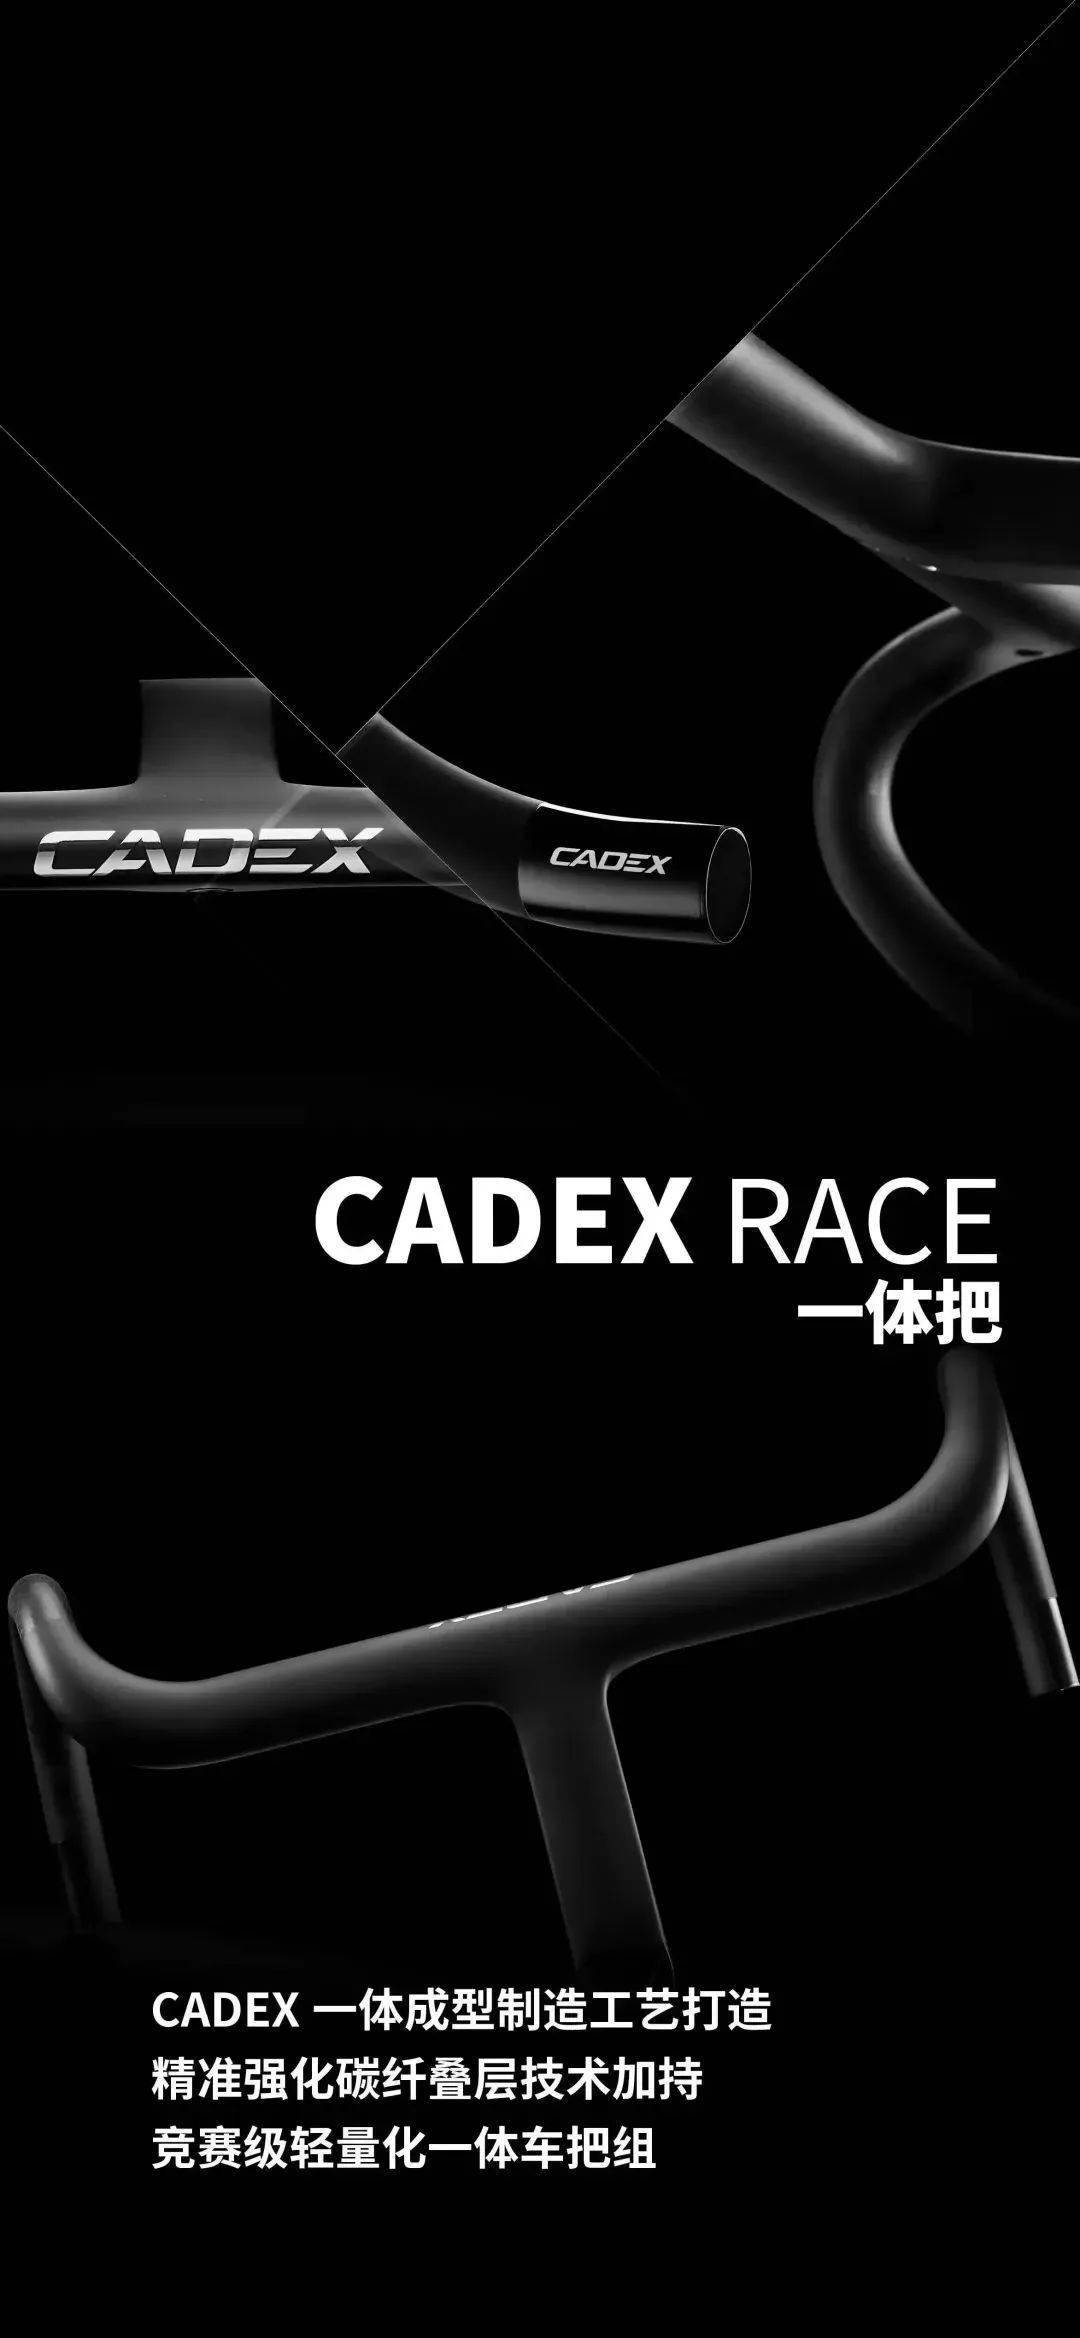 cadex max 40轮组领衔上市 四款新品闪亮登场